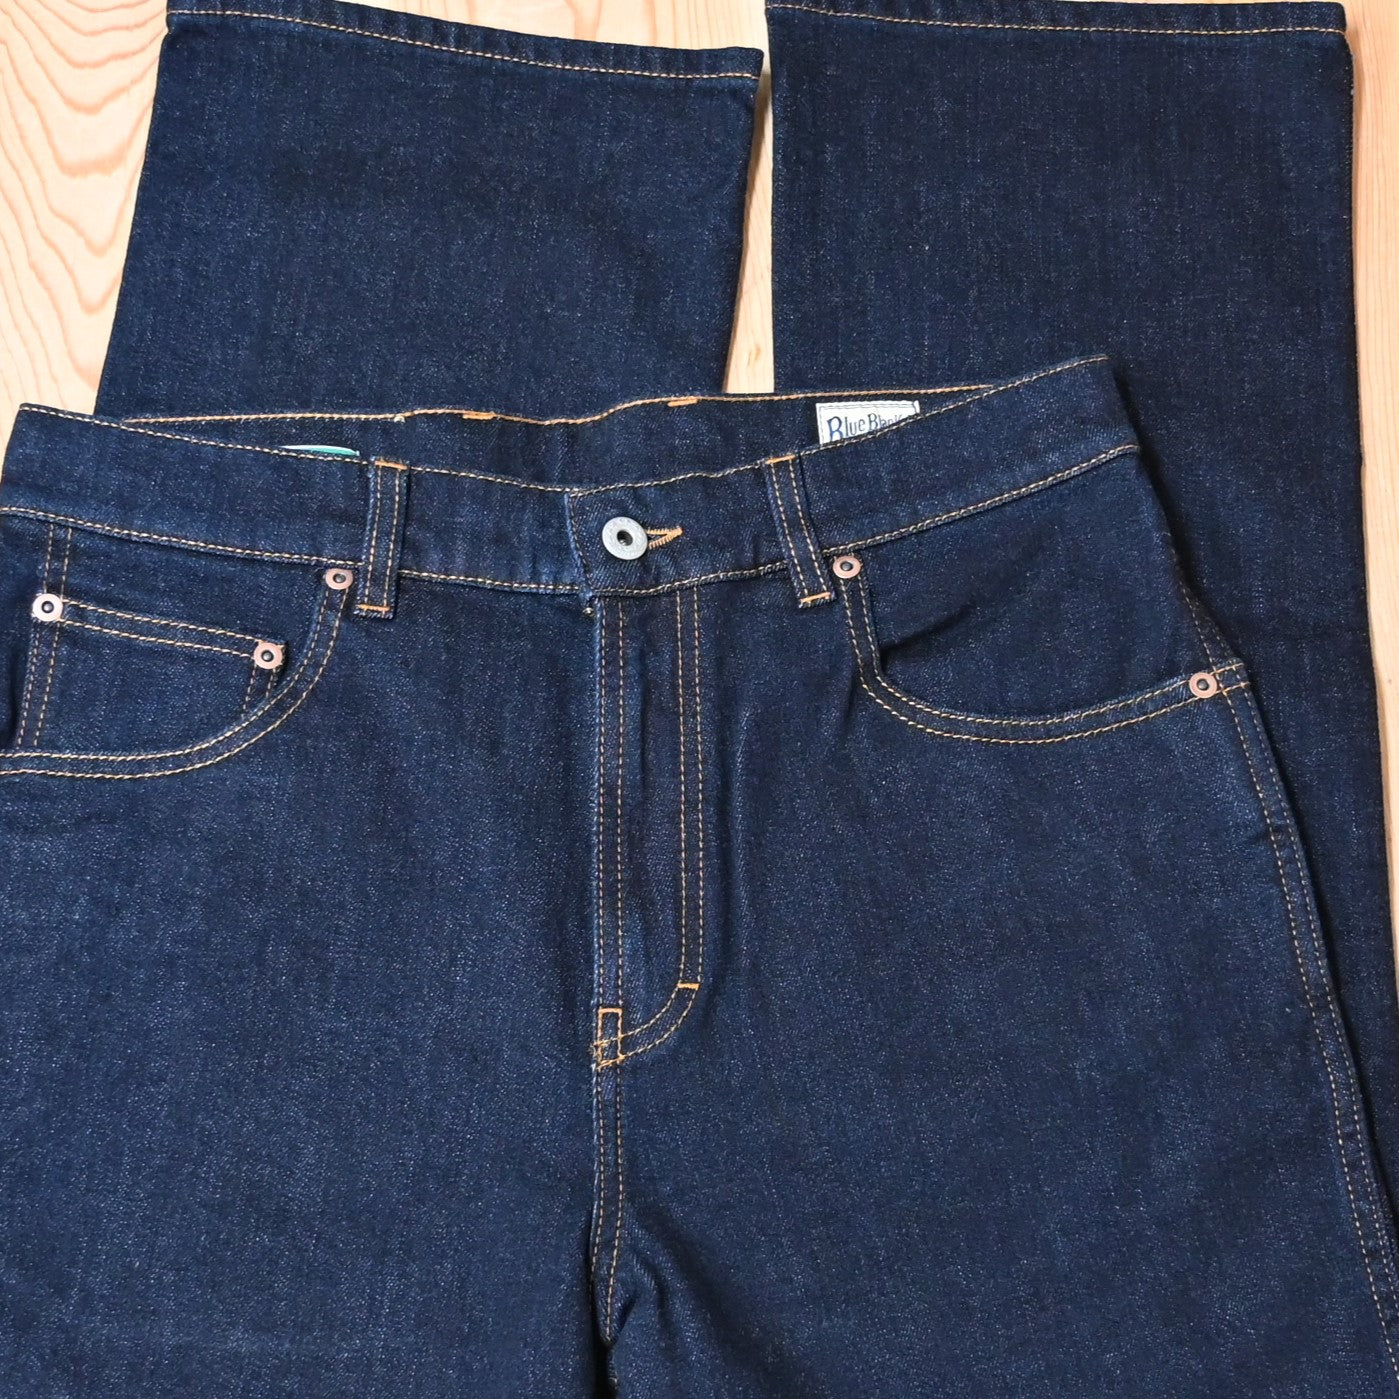 Blue Blanket Mens Dark Denim Jeans view of waist